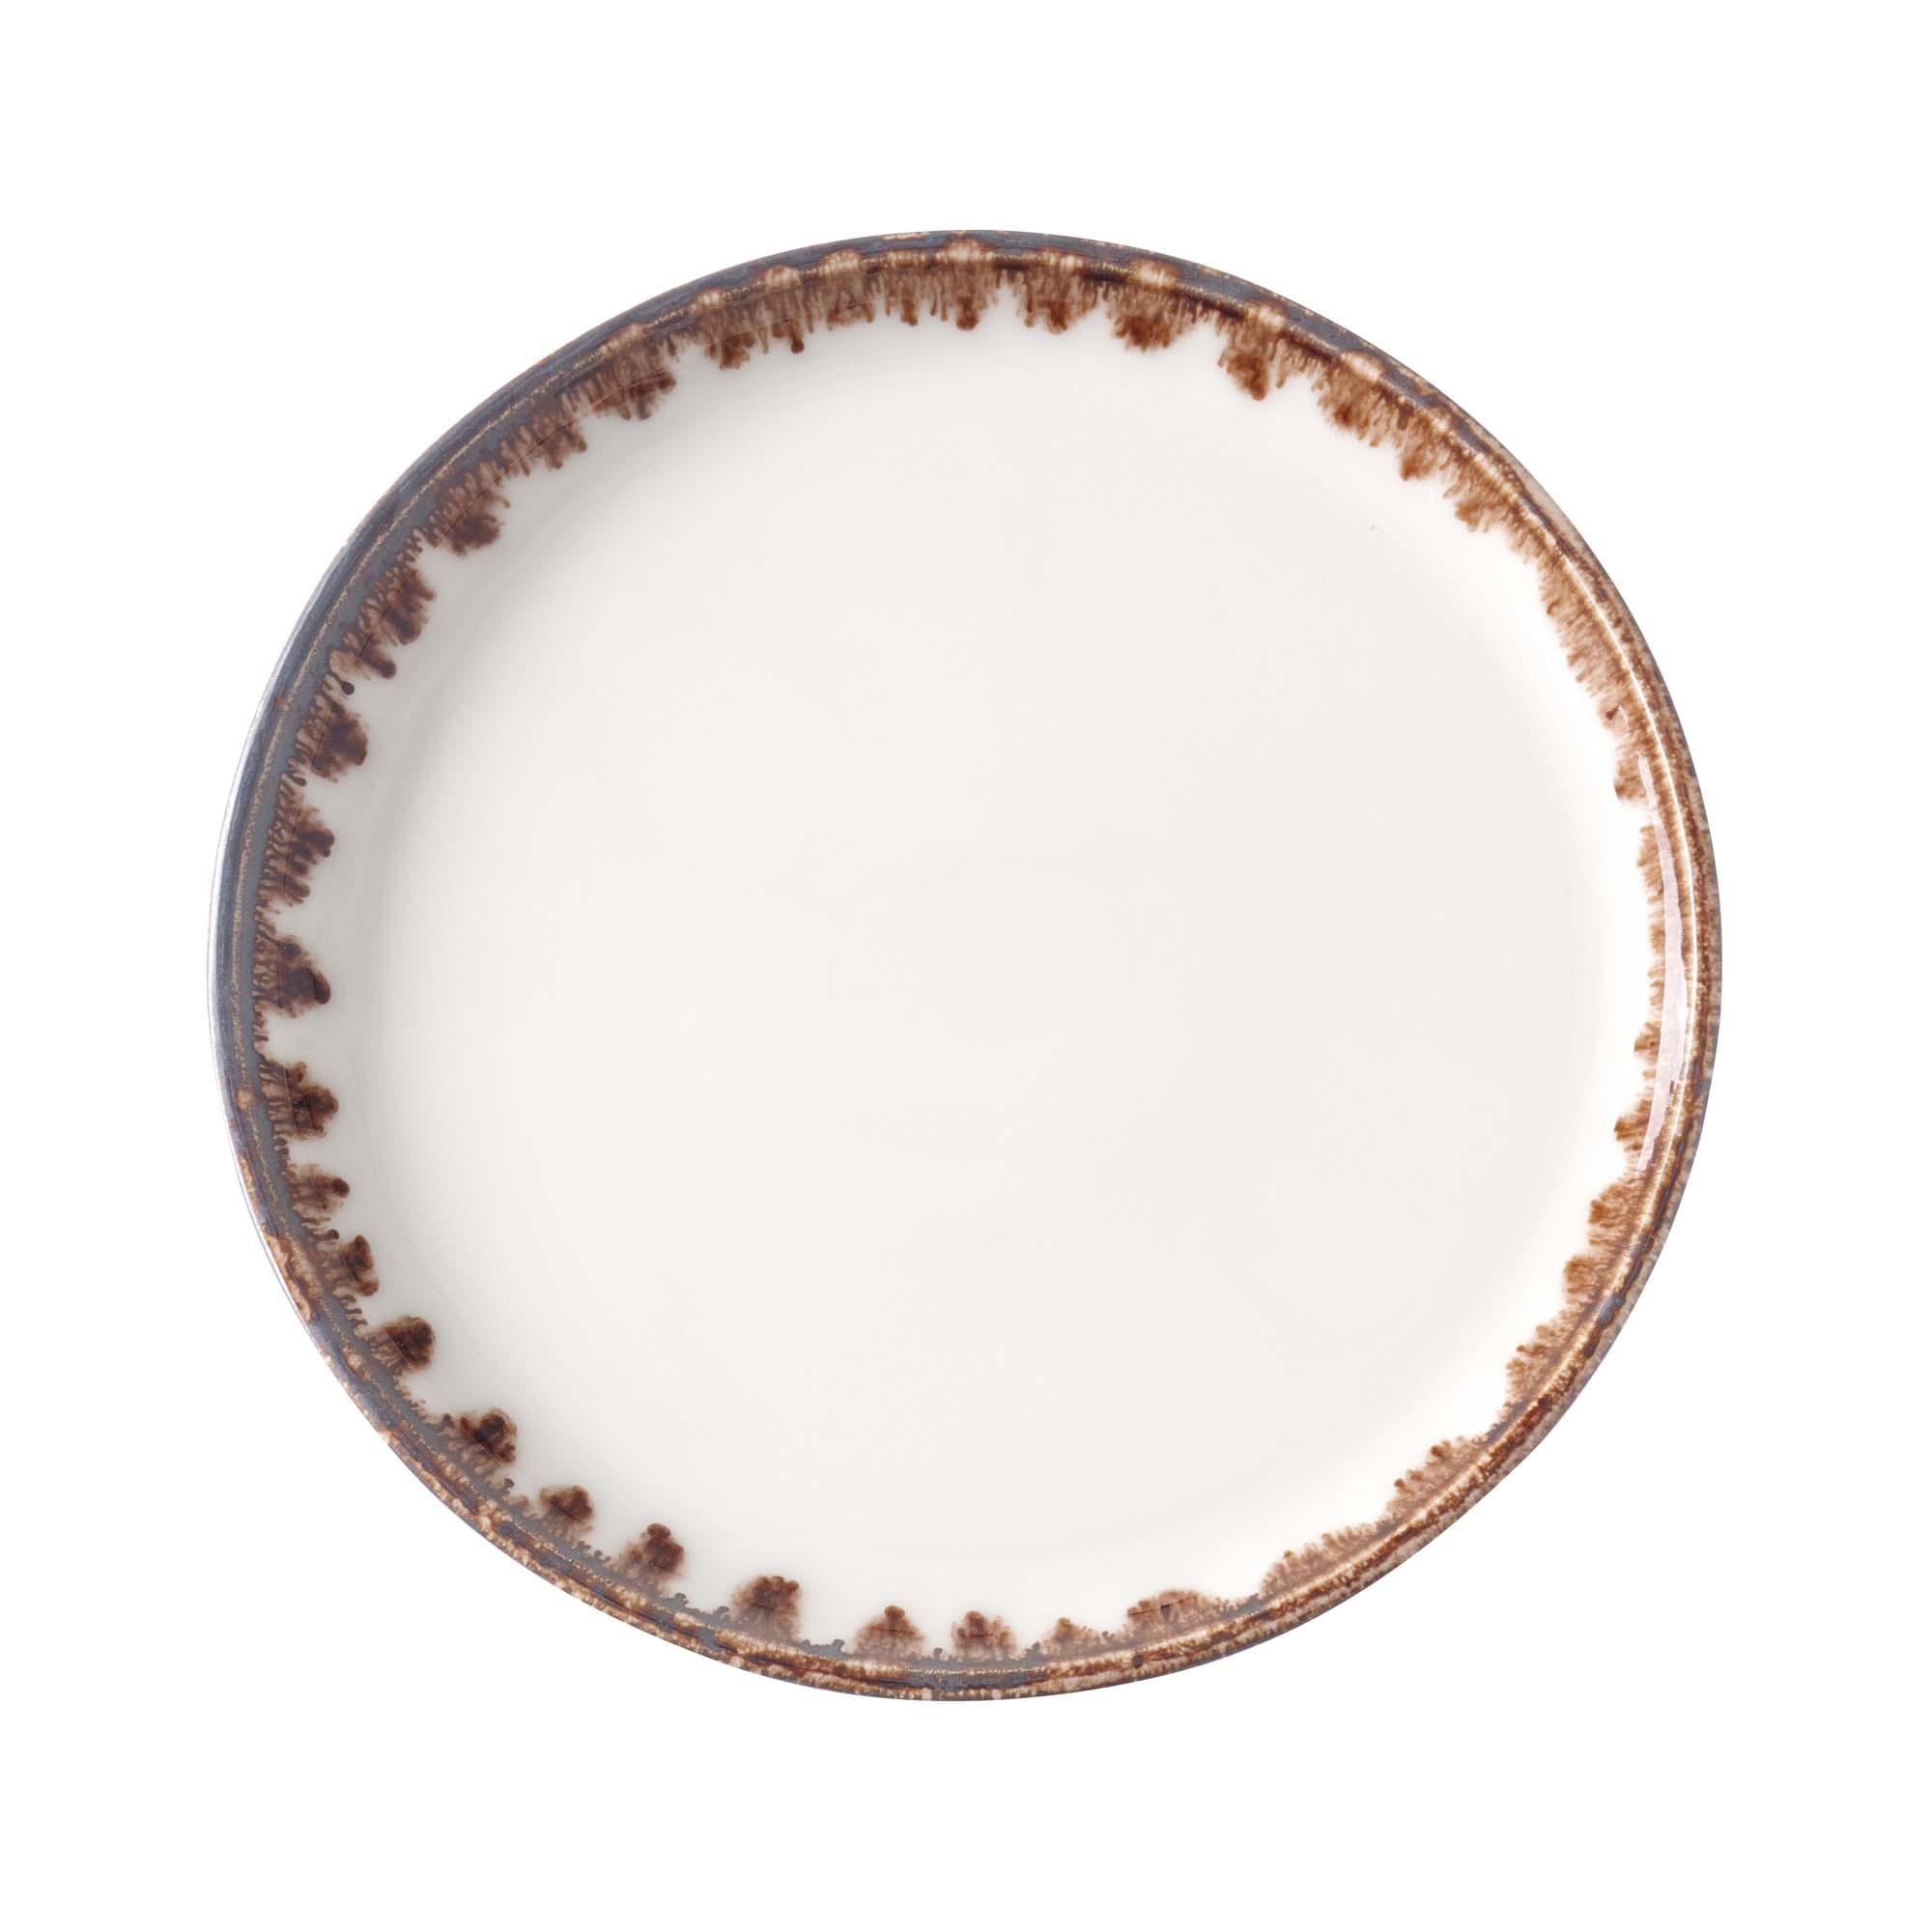 Vanilla flat plate, 190mm